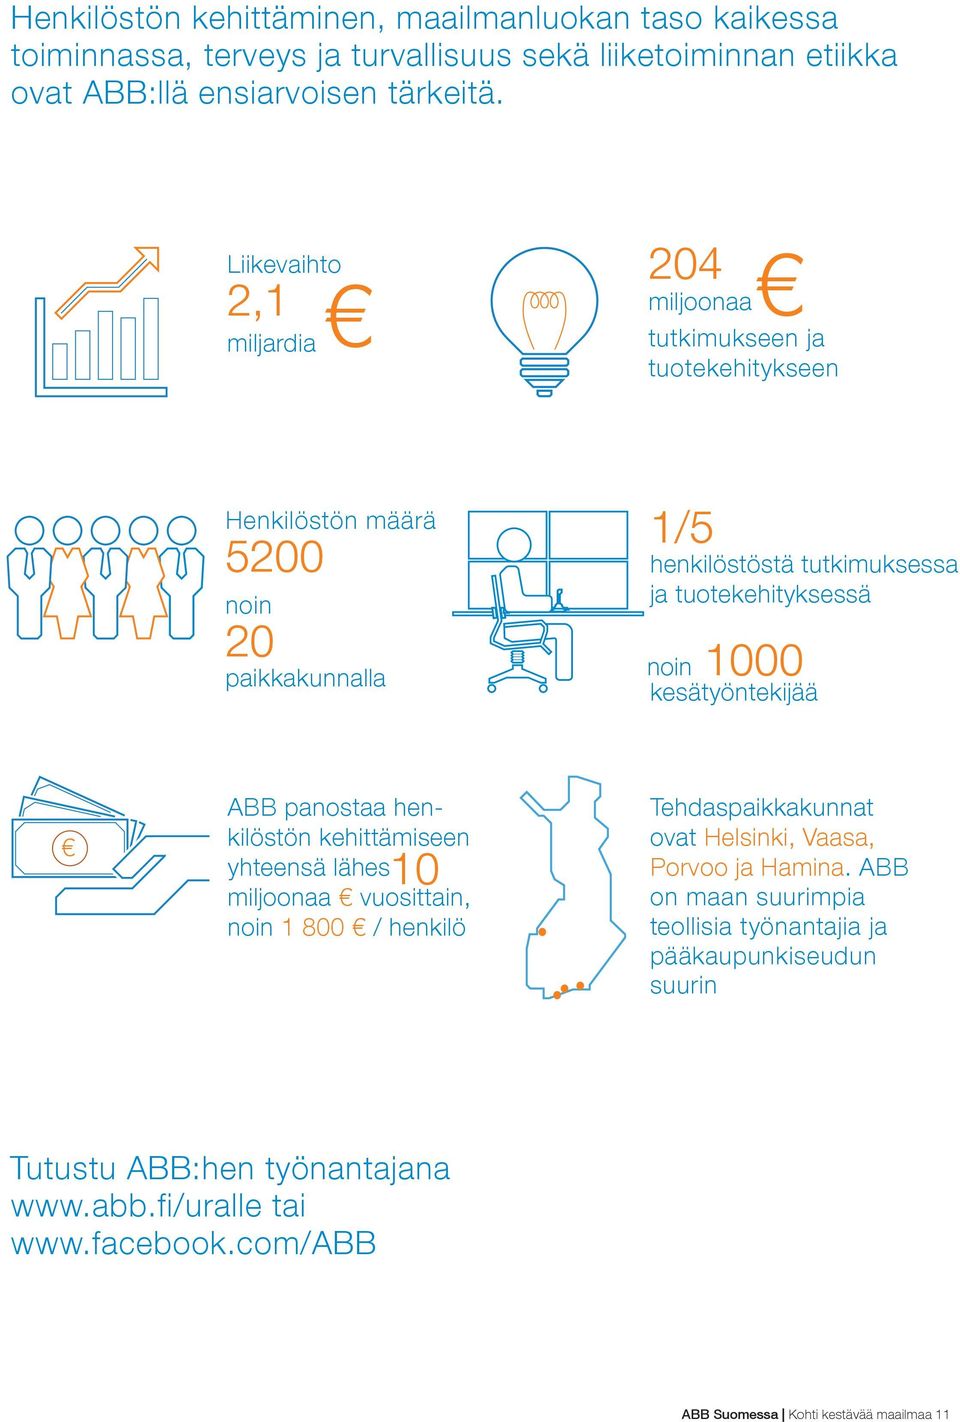 noin 1000 kesätyöntekijää ABB panostaa henkilöstön kehittämiseen yhteensä lähes 10 miljoonaa vuosittain, noin 1 800 / henkilö Tehdaspaikkakunnat ovat Helsinki, Vaasa, Porvoo